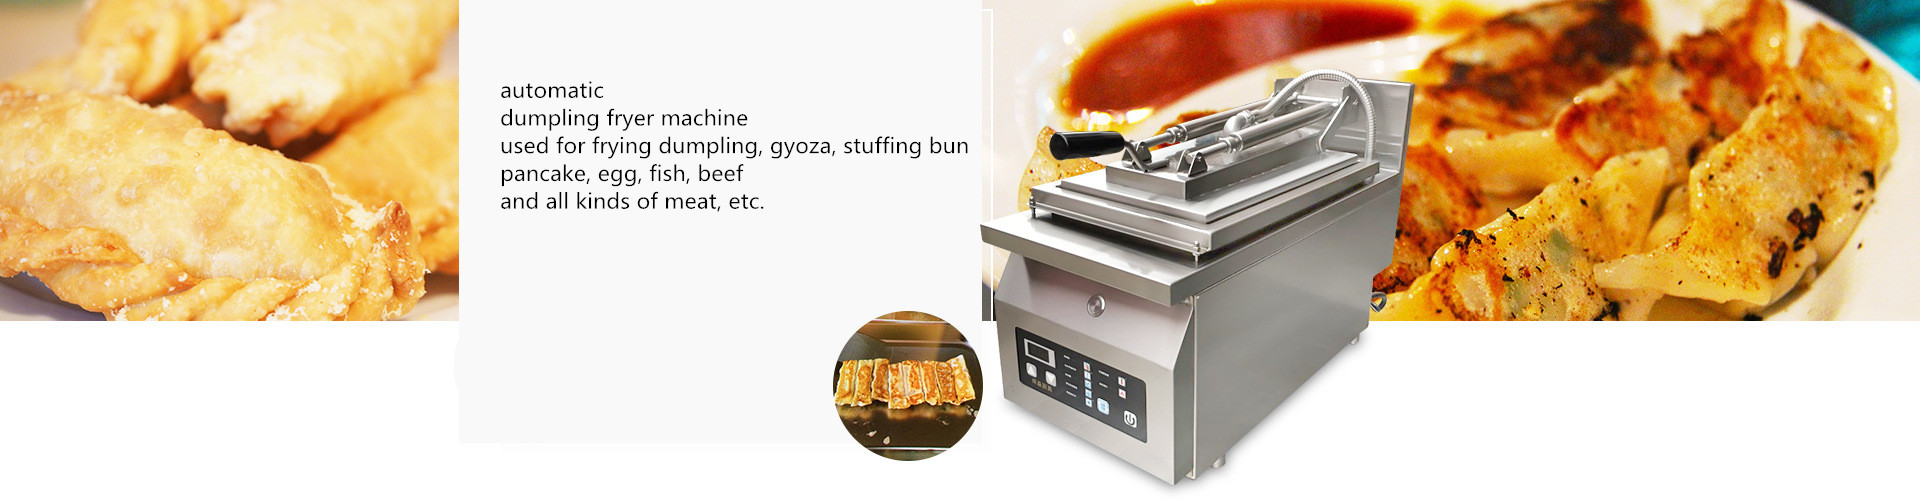 Electric heating automatic dumpling frying machine 